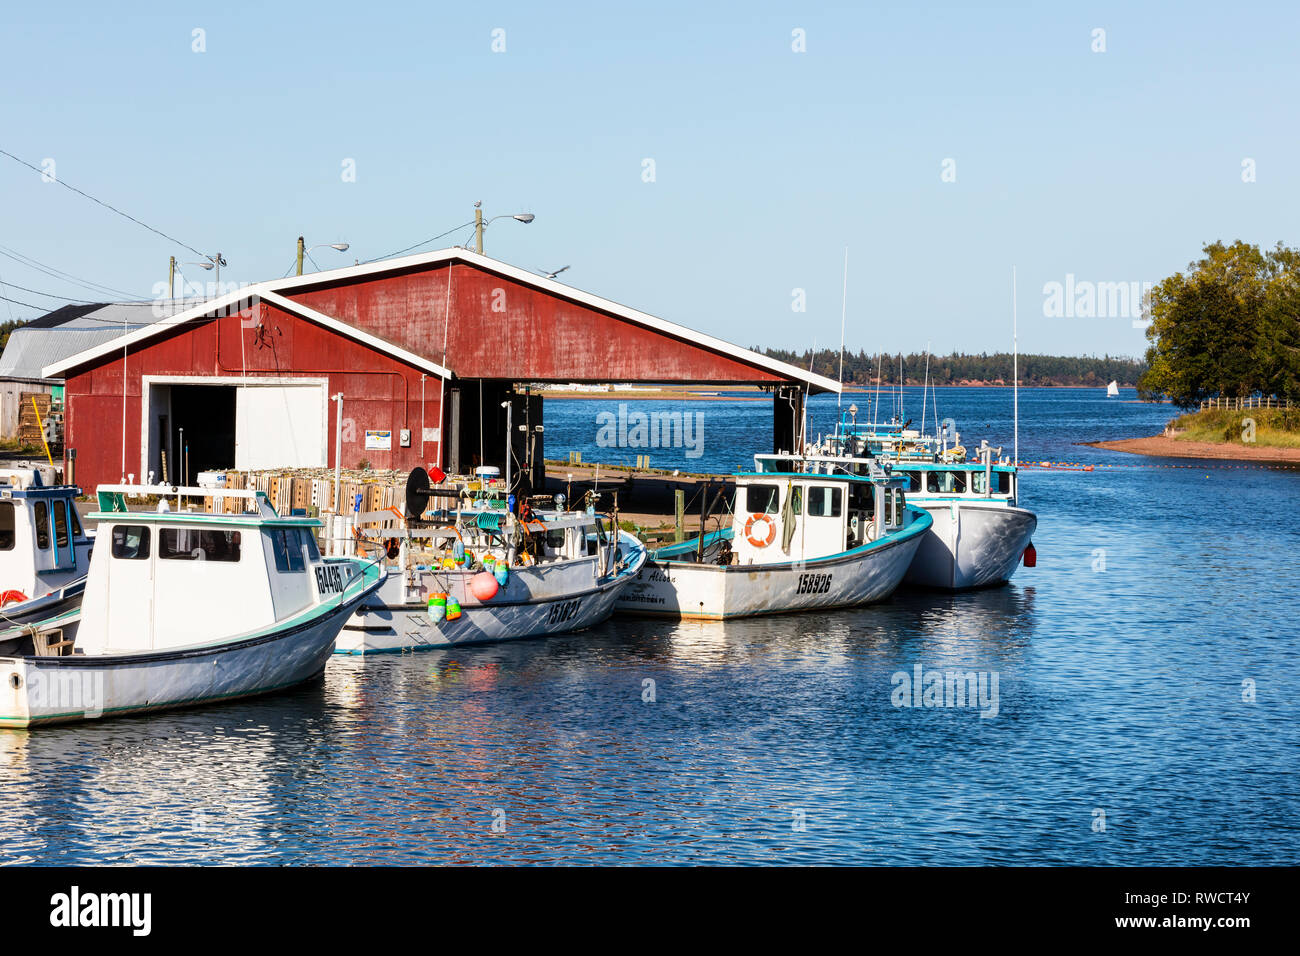 Les bateaux de pêche amarrés au quai, Murray River, Prince Edward Island, Canada Banque D'Images